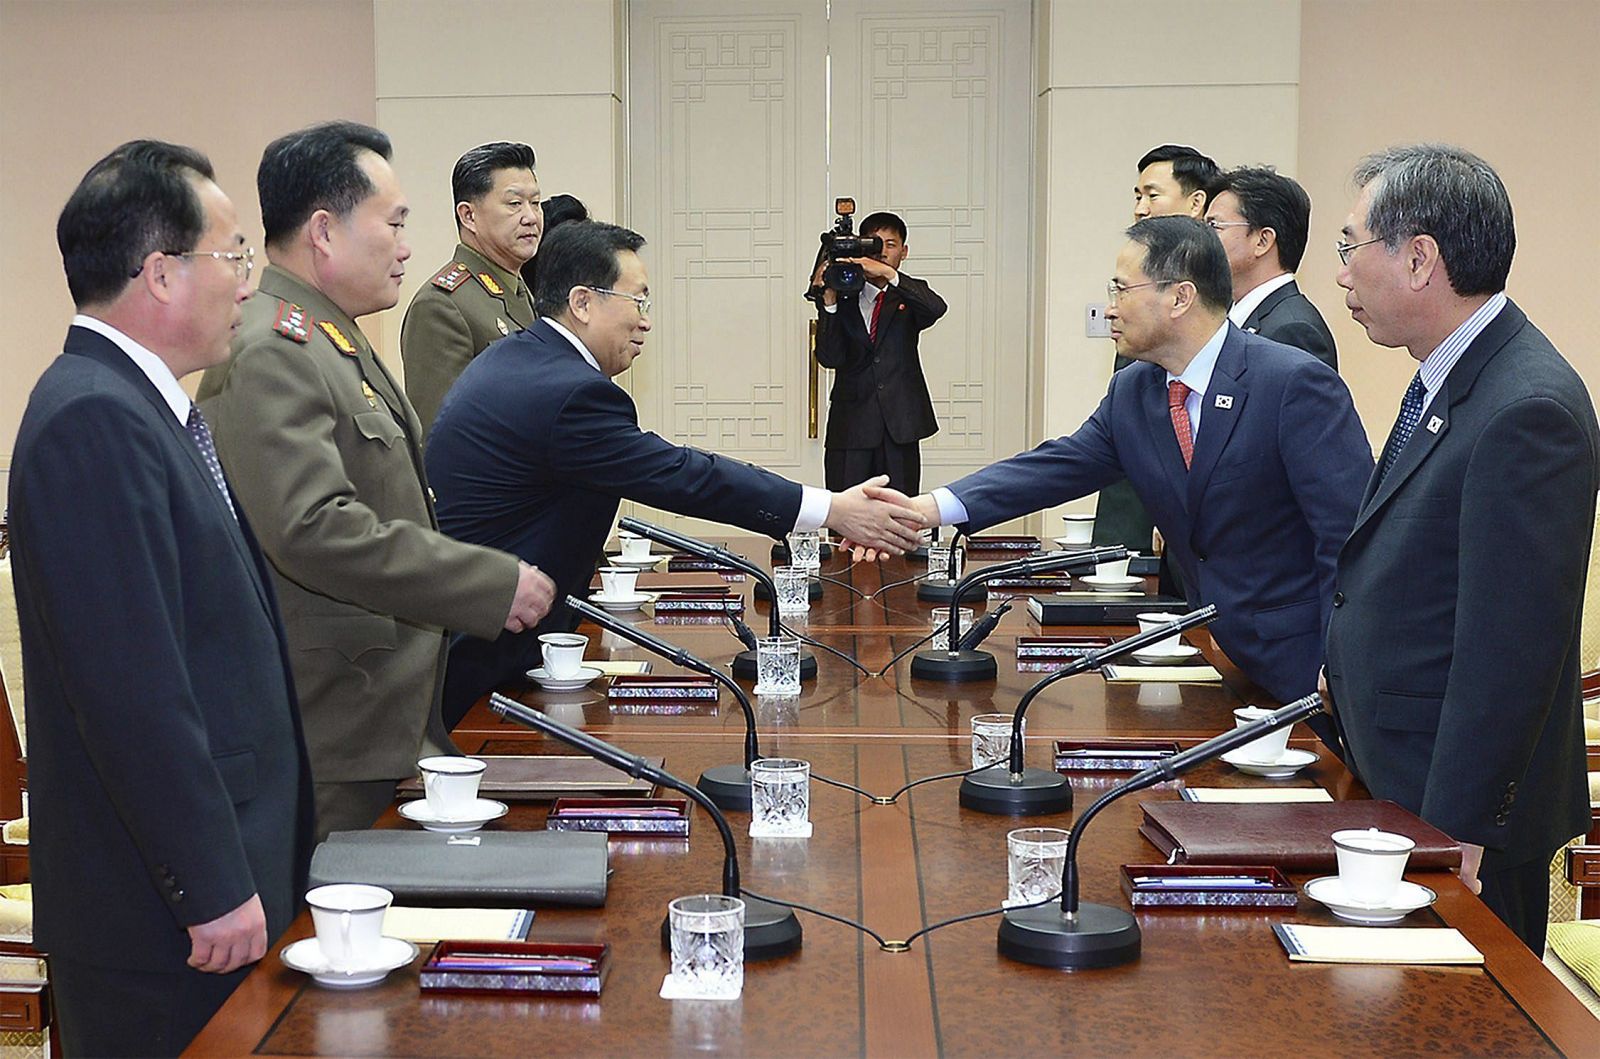 Fotografía facilitada por el Ministerio surcoreano de Unificación que muestra al jefe de la delegación surcoreana, Kim Kyou-hyun estrechando la mano de su homólogo norcoreano, Won Dong-yeon en Panmunjom.